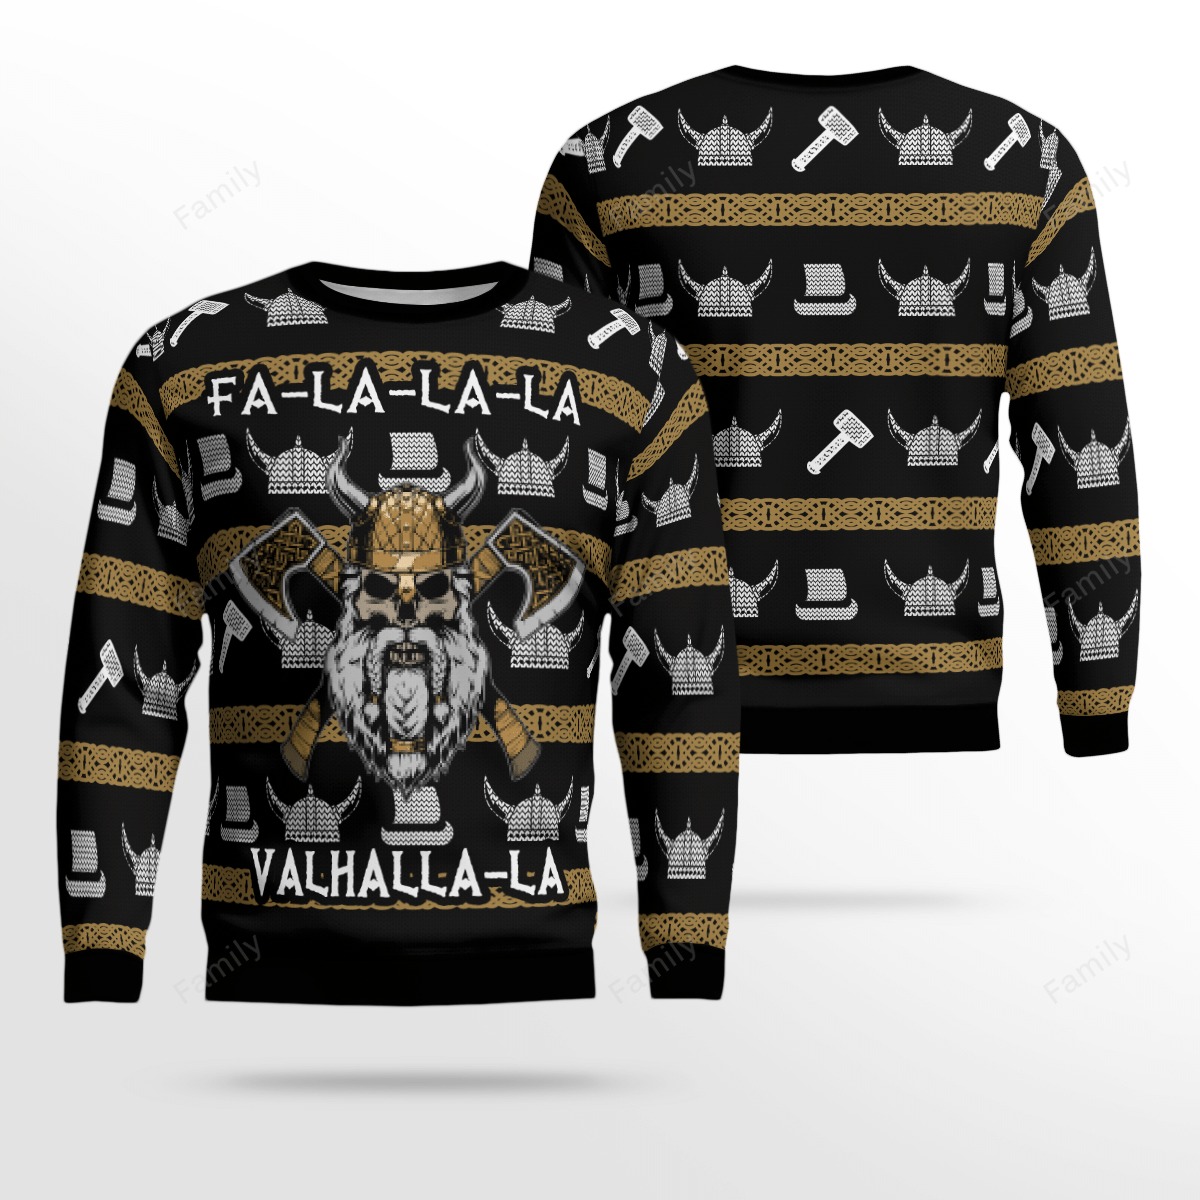 Viking Fa-la-la-la valhalla-la sweater